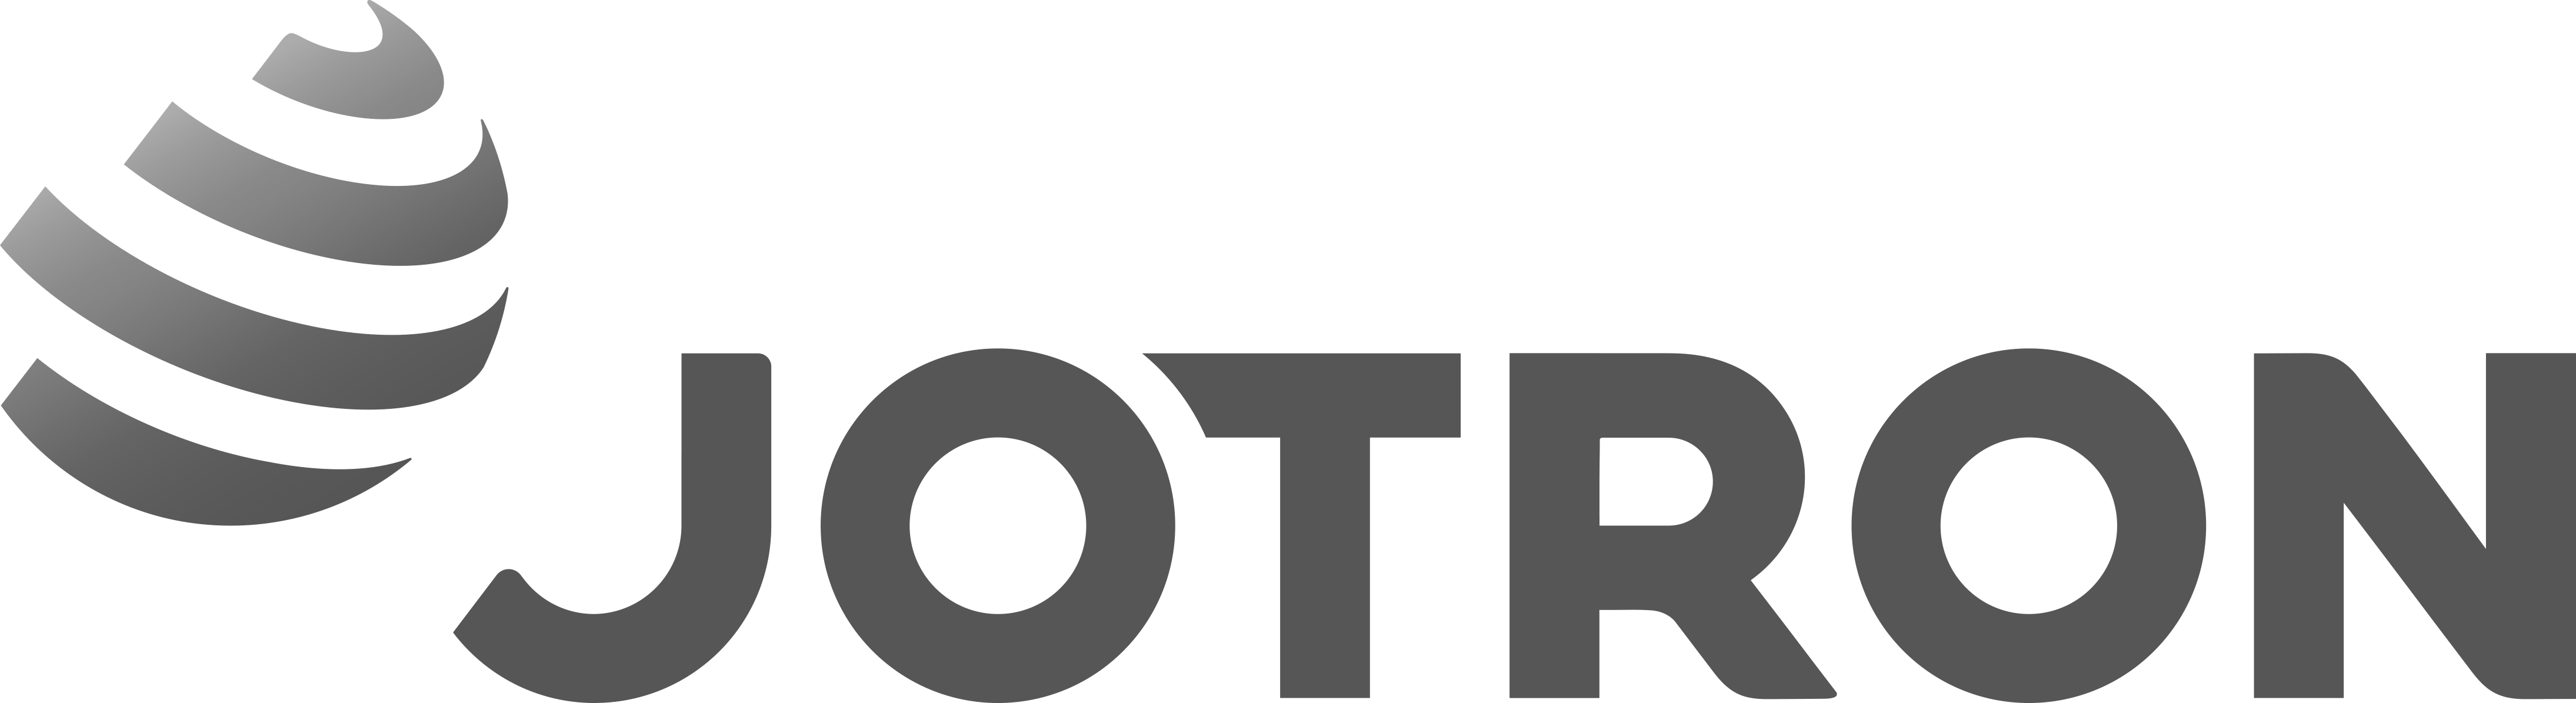 Jotron-logo